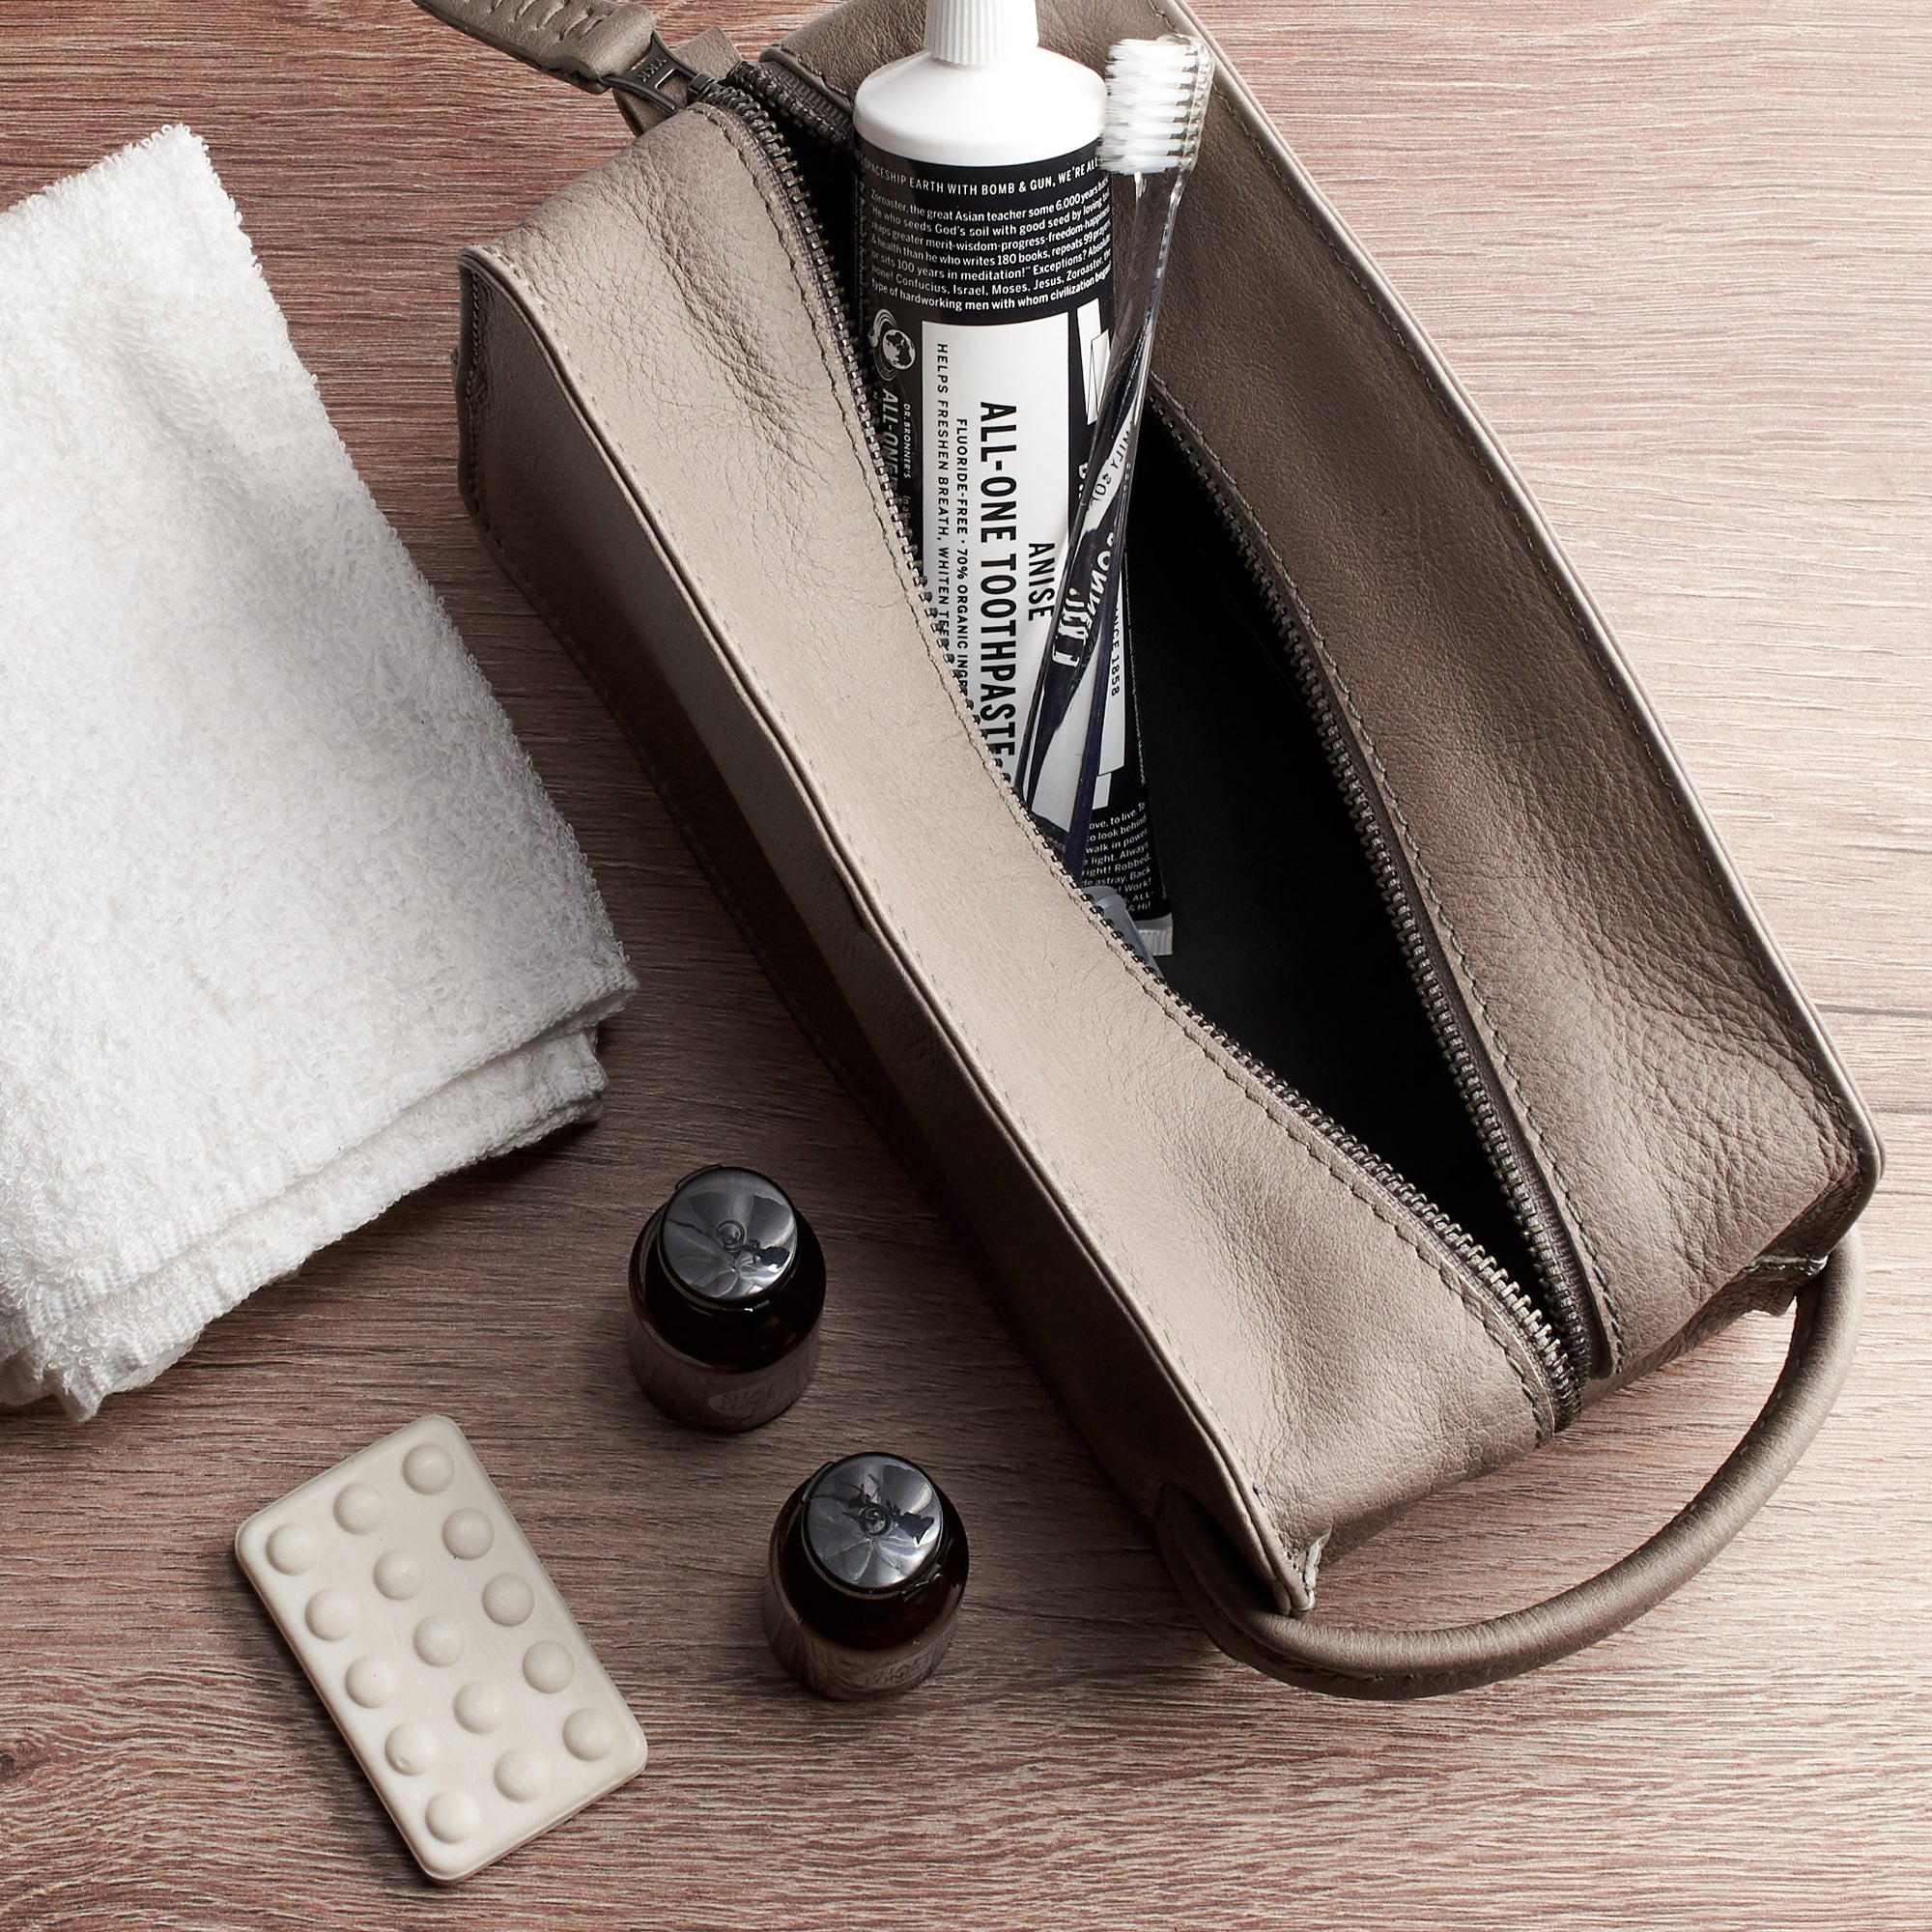 Open. Grey leather shaving bag. Groomsmen gifts for men. Handmade leather travel toiletry bag